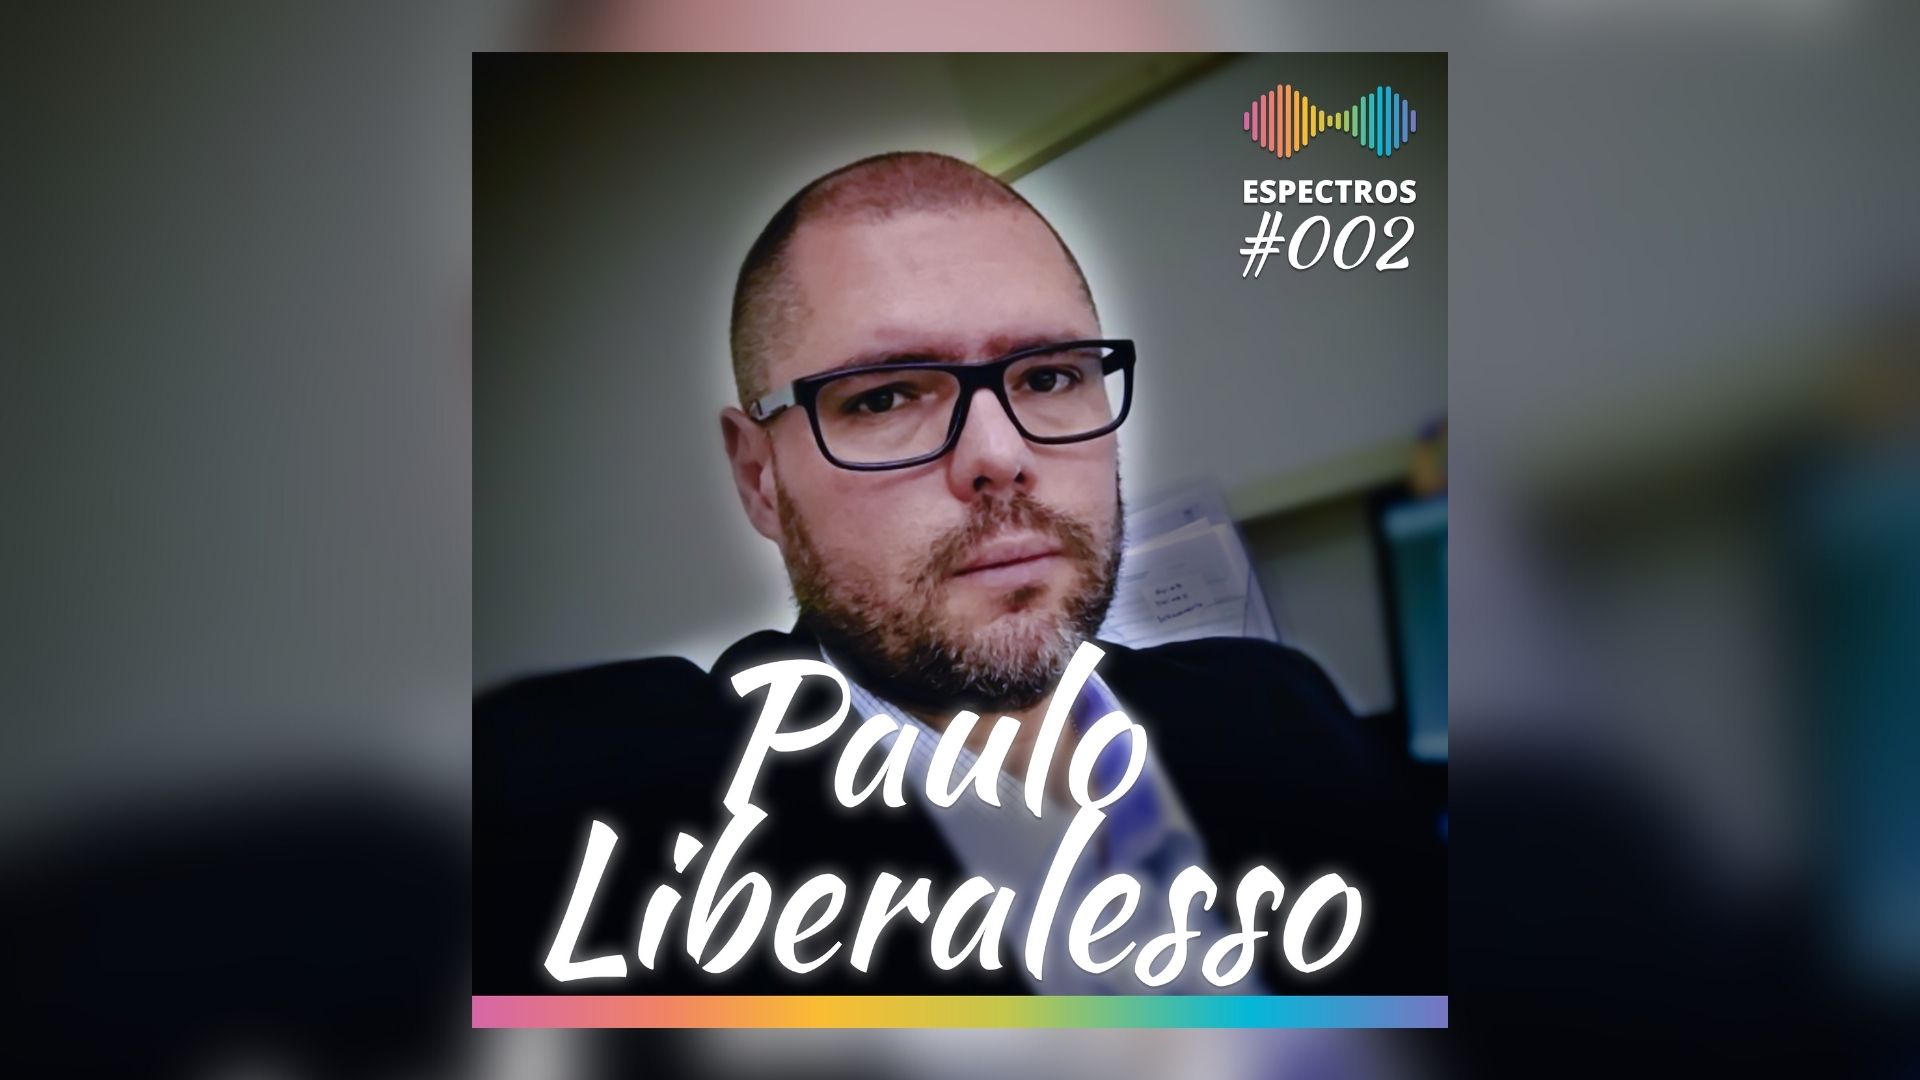 Paulo Liberalesso fala sobre profissão, sentimentos e polêmicas no podcast 'Espectros' — Canal Autismo / Revista Autismo